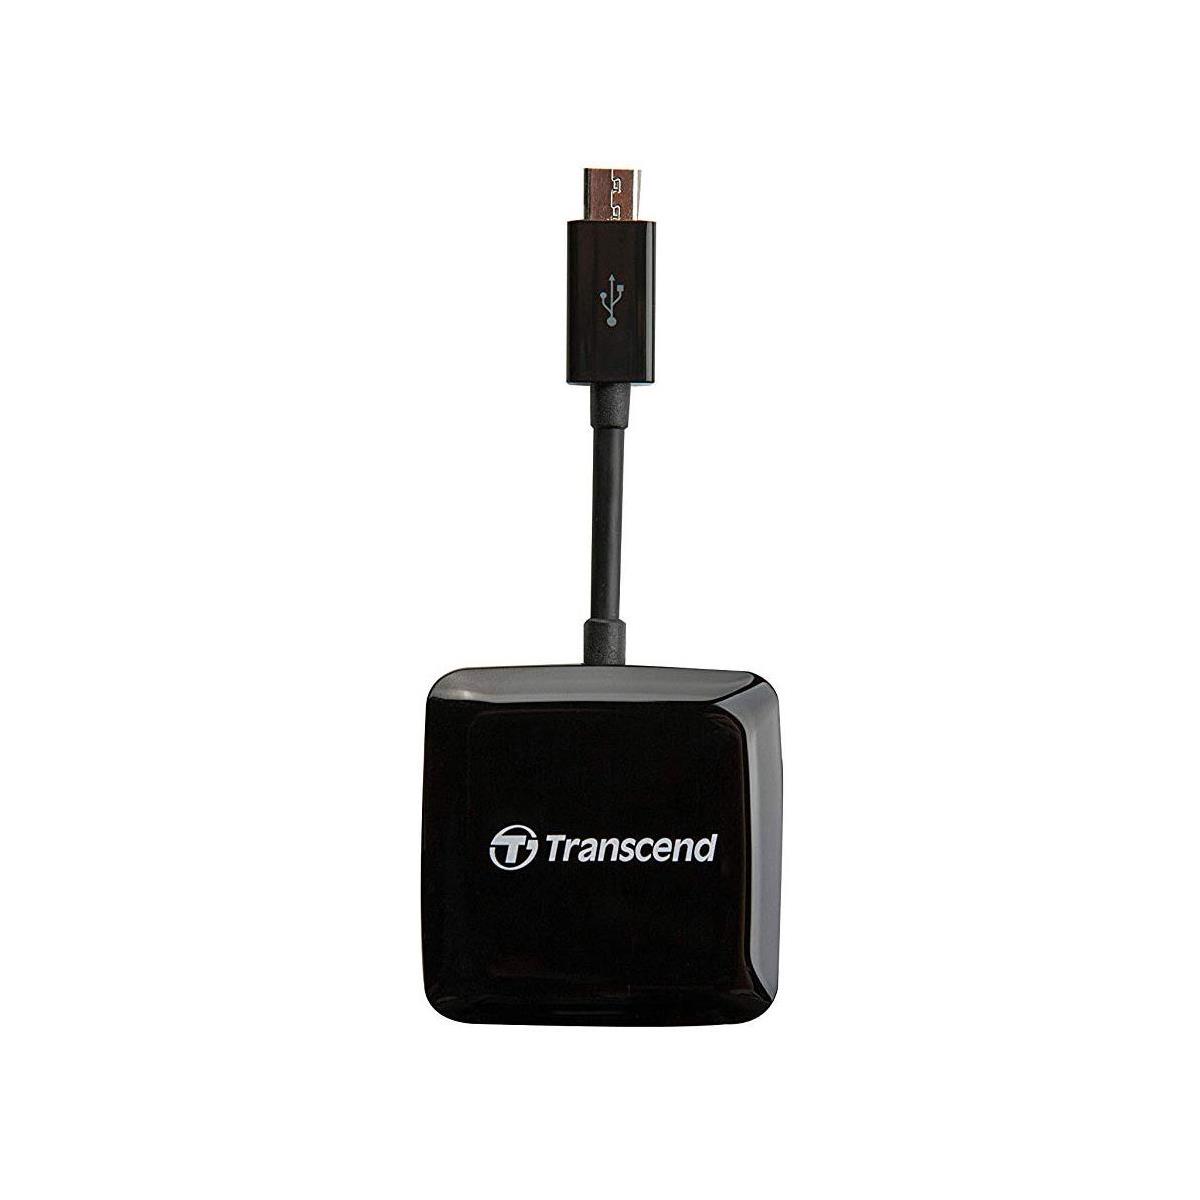 

Transcend RDP9 USB 2.0 OTG Smart Card Reader, SD, microSD